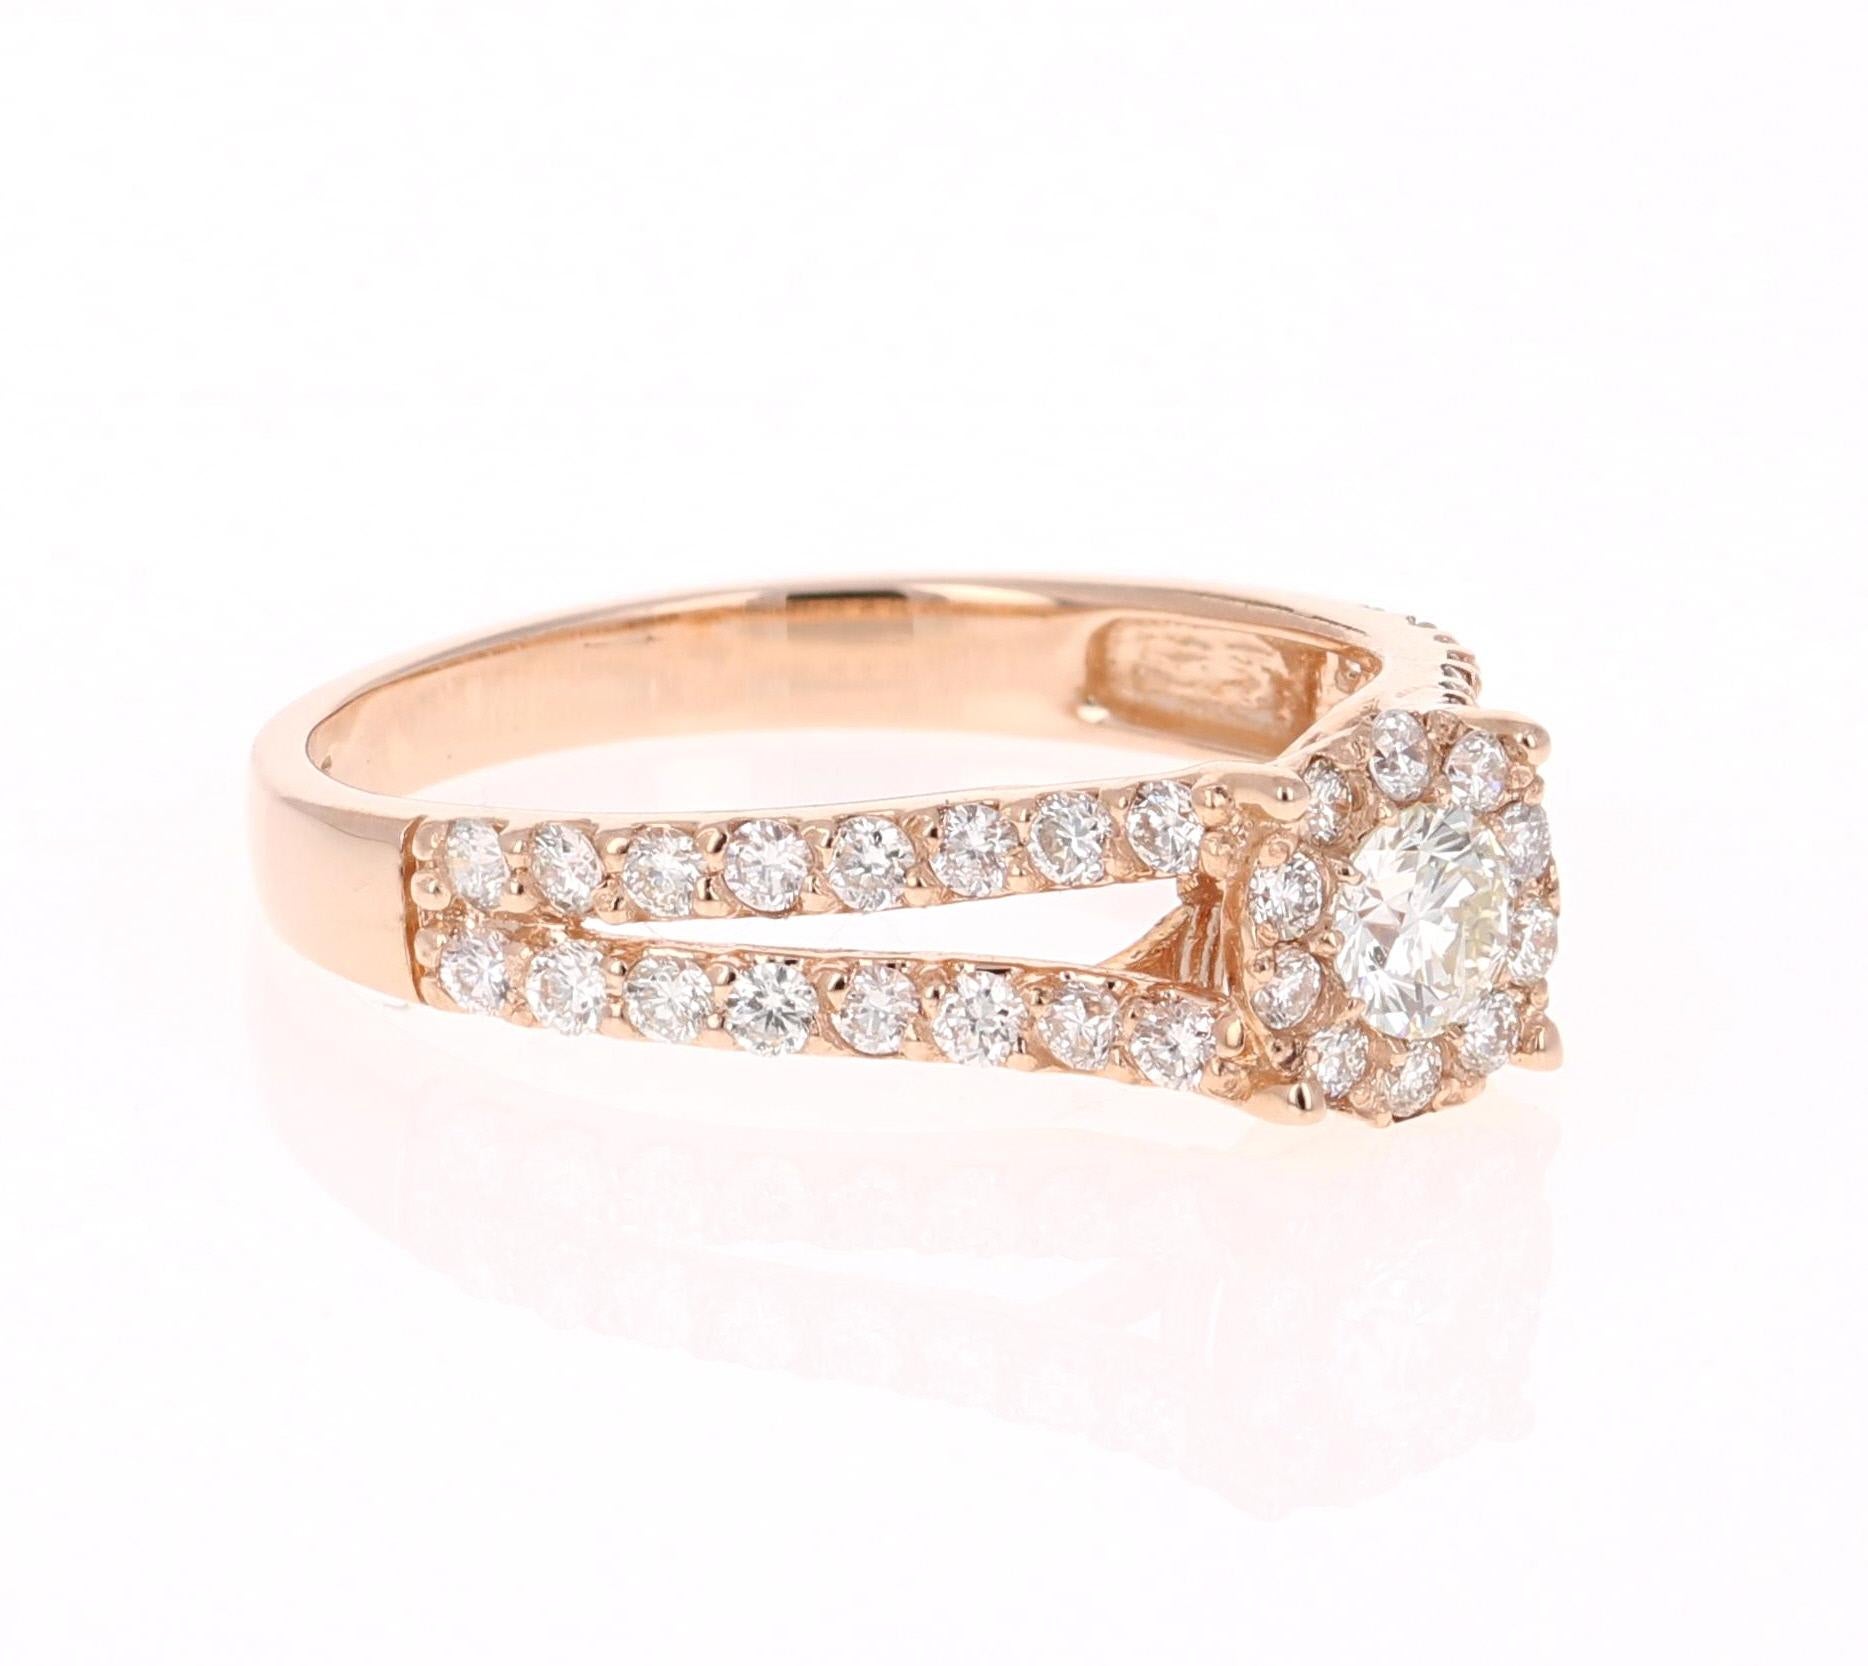 Ein süßer und zierlicher Ring mit 43 Diamanten im Rundschliff und einem Gewicht von 0,77 Karat. (Reinheit: VS, Farbe: H) 

Es ist schön in 14 Karat Roségold gefasst und wiegt etwa 2,7 Gramm

Der Ring hat die Größe 6 3/4 und kann bei Bedarf kostenlos